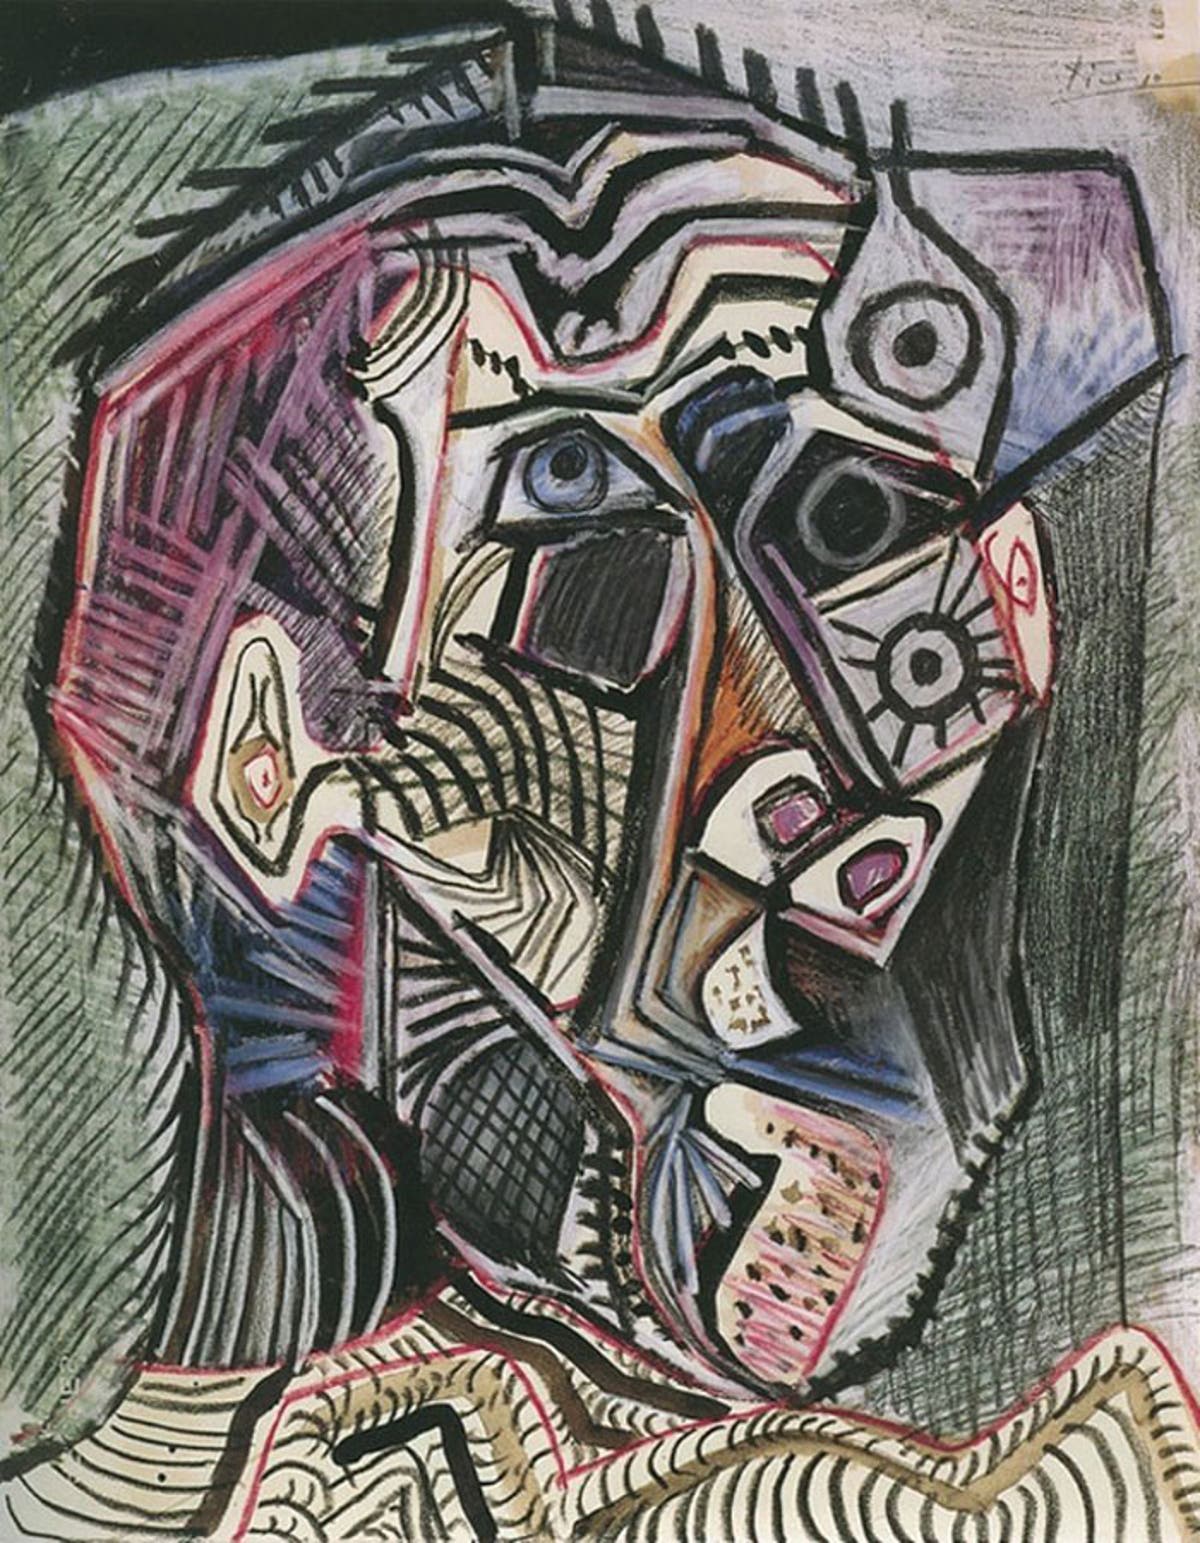 Tiza Hueco alquiler Picasso de los 15 a los 90 años a través de sus autorretratos (FOTOS)